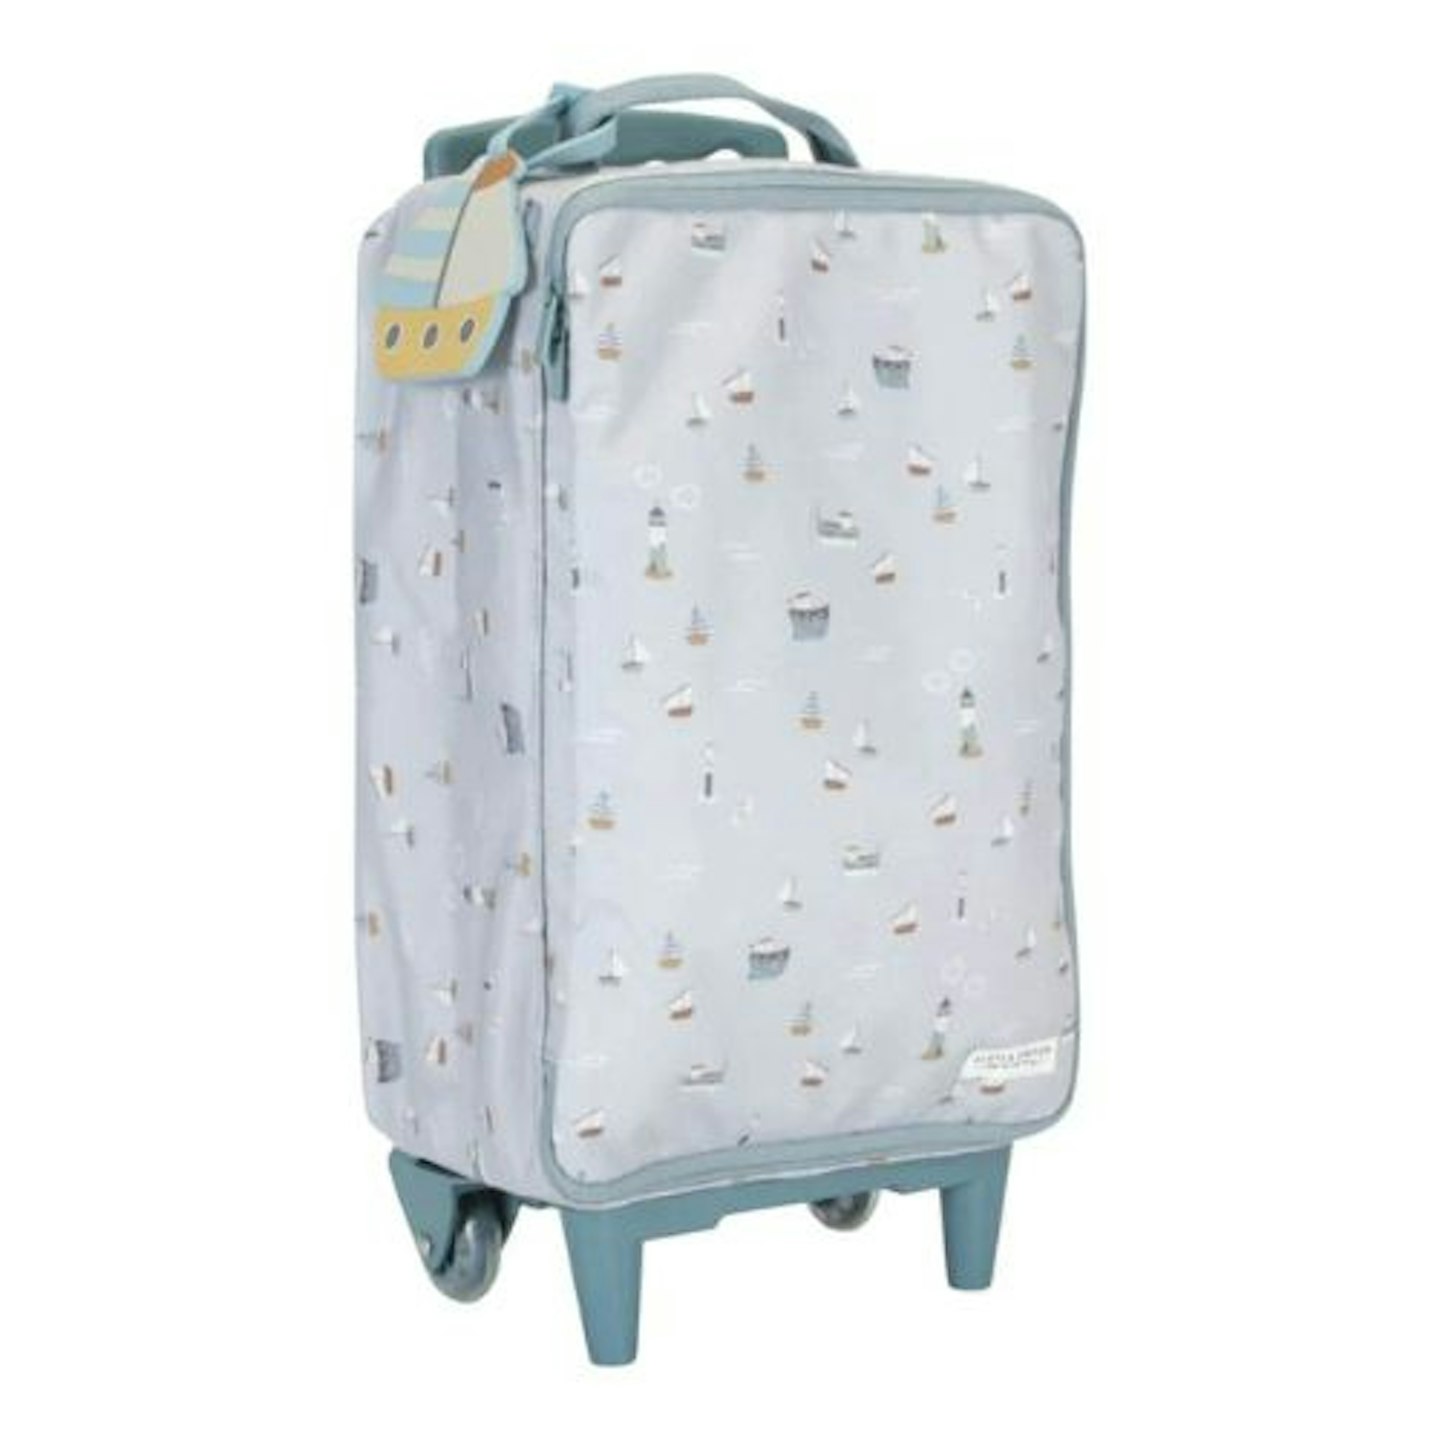 Best children's suitcases Little Dutch Children's Suitcase - Sailors Bay Blue